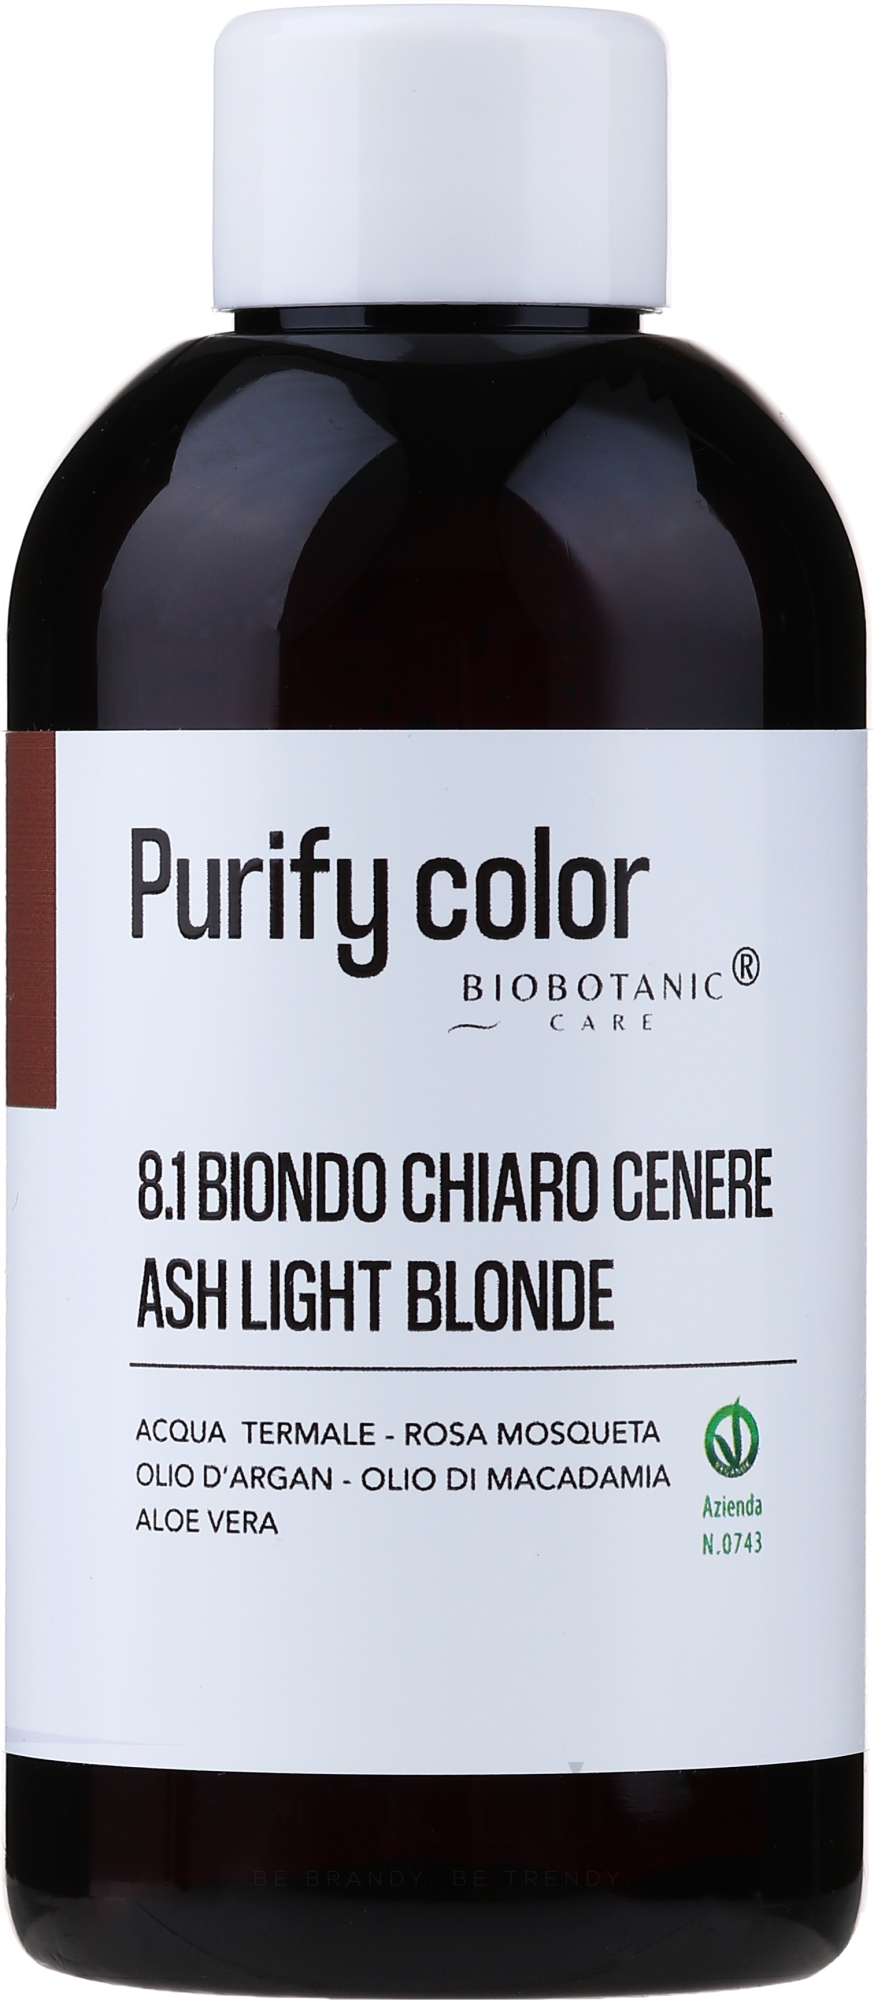 Haarfarbe mit pflegenden Ölen 150 ml - BioBotanic Purify Color — Bild 8.1 - Ash Light Blonde